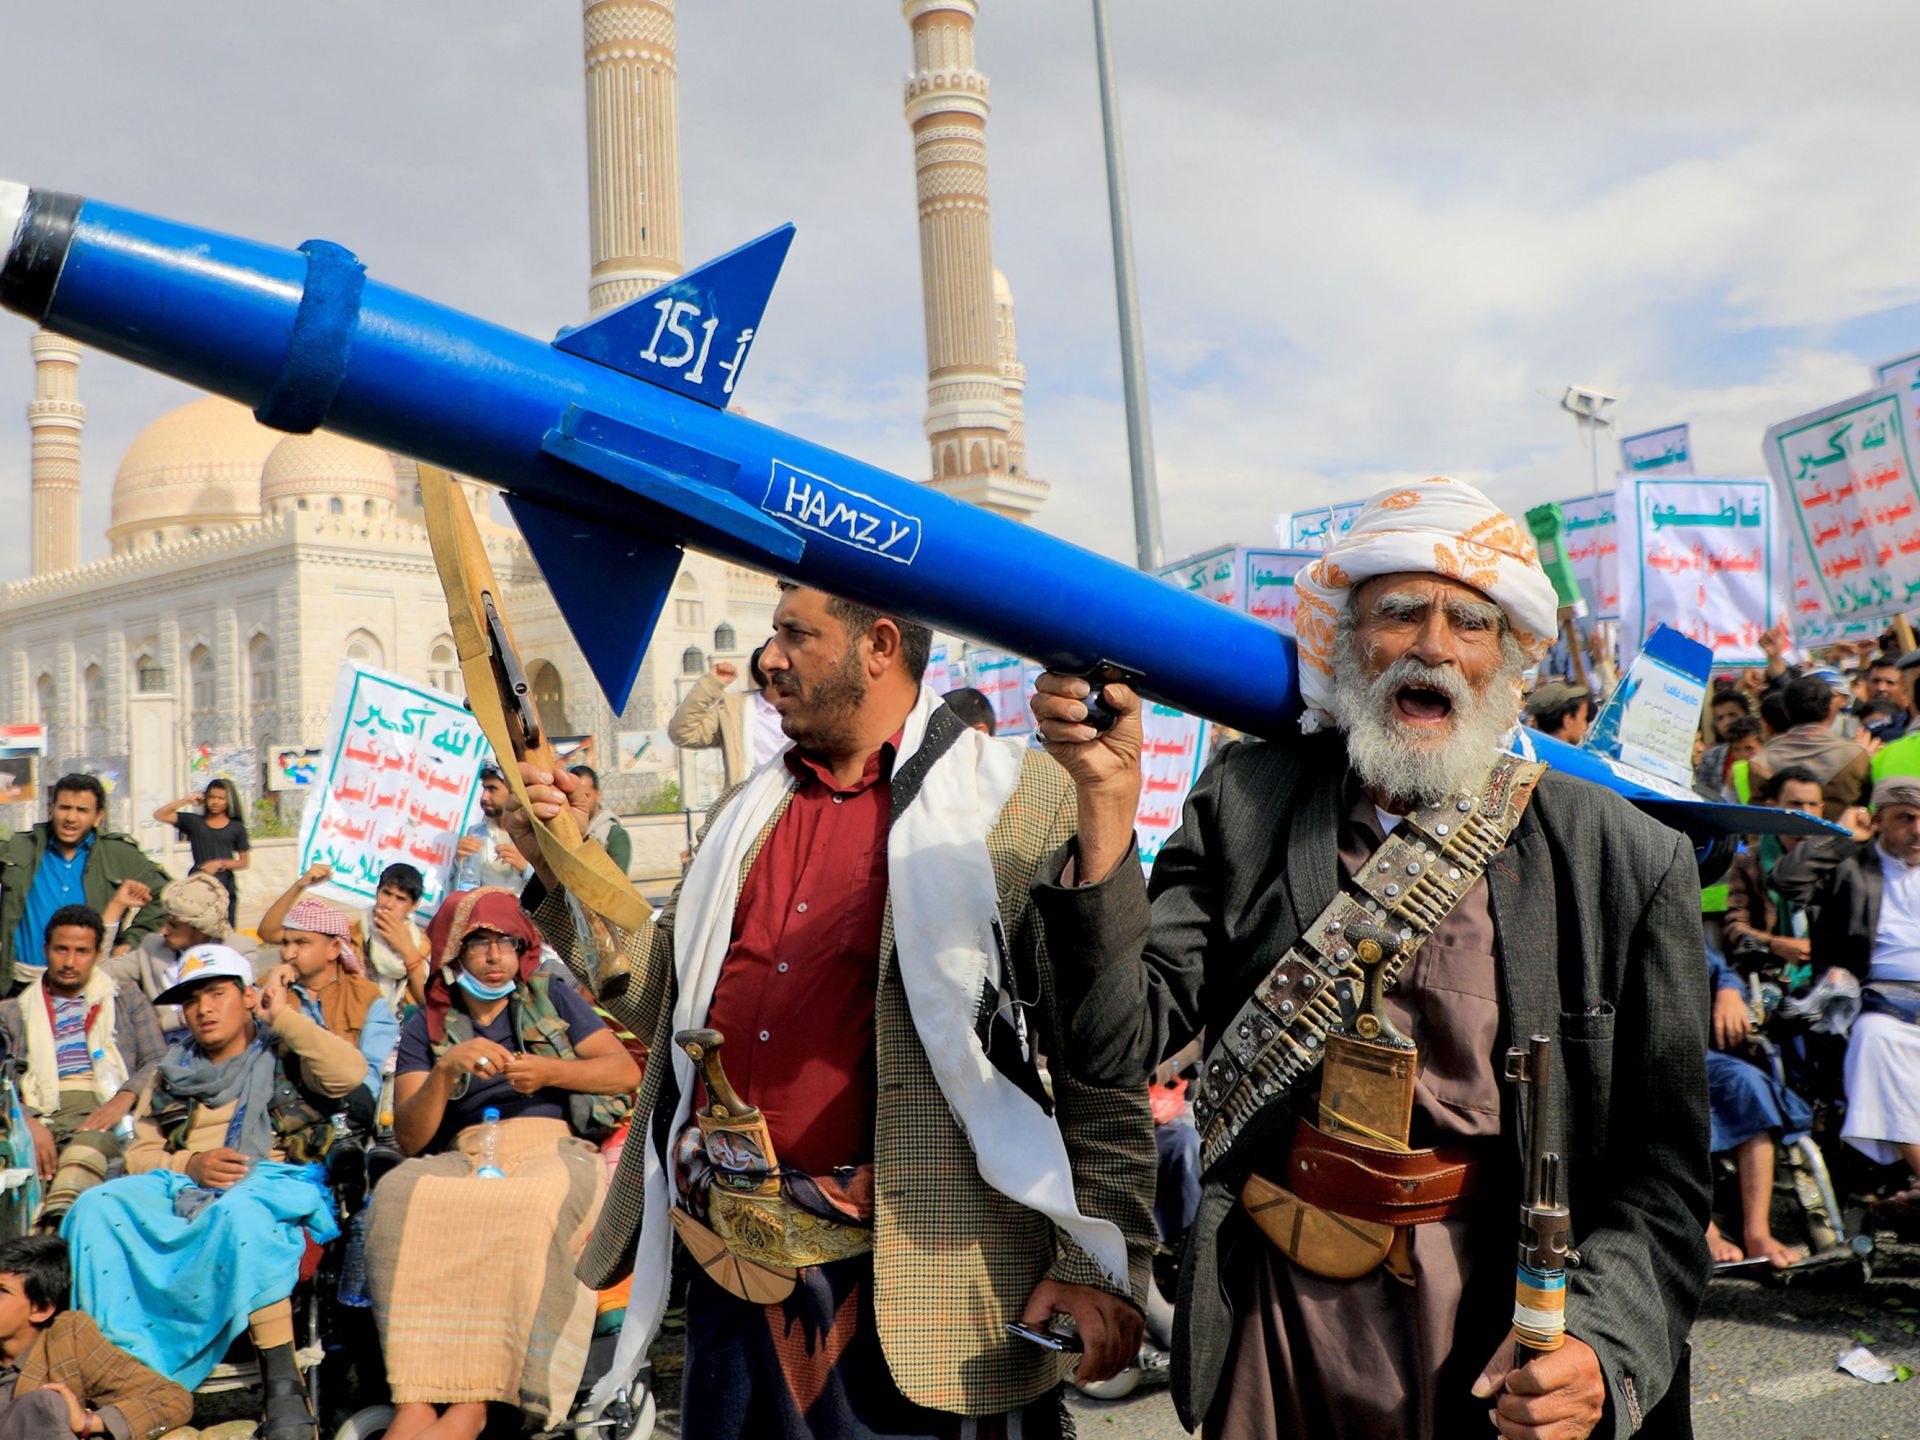 الحوثيون يستهدفون سفينة أميركية ويتوعدون بالتصعيد في رمضان | أخبار – البوكس نيوز